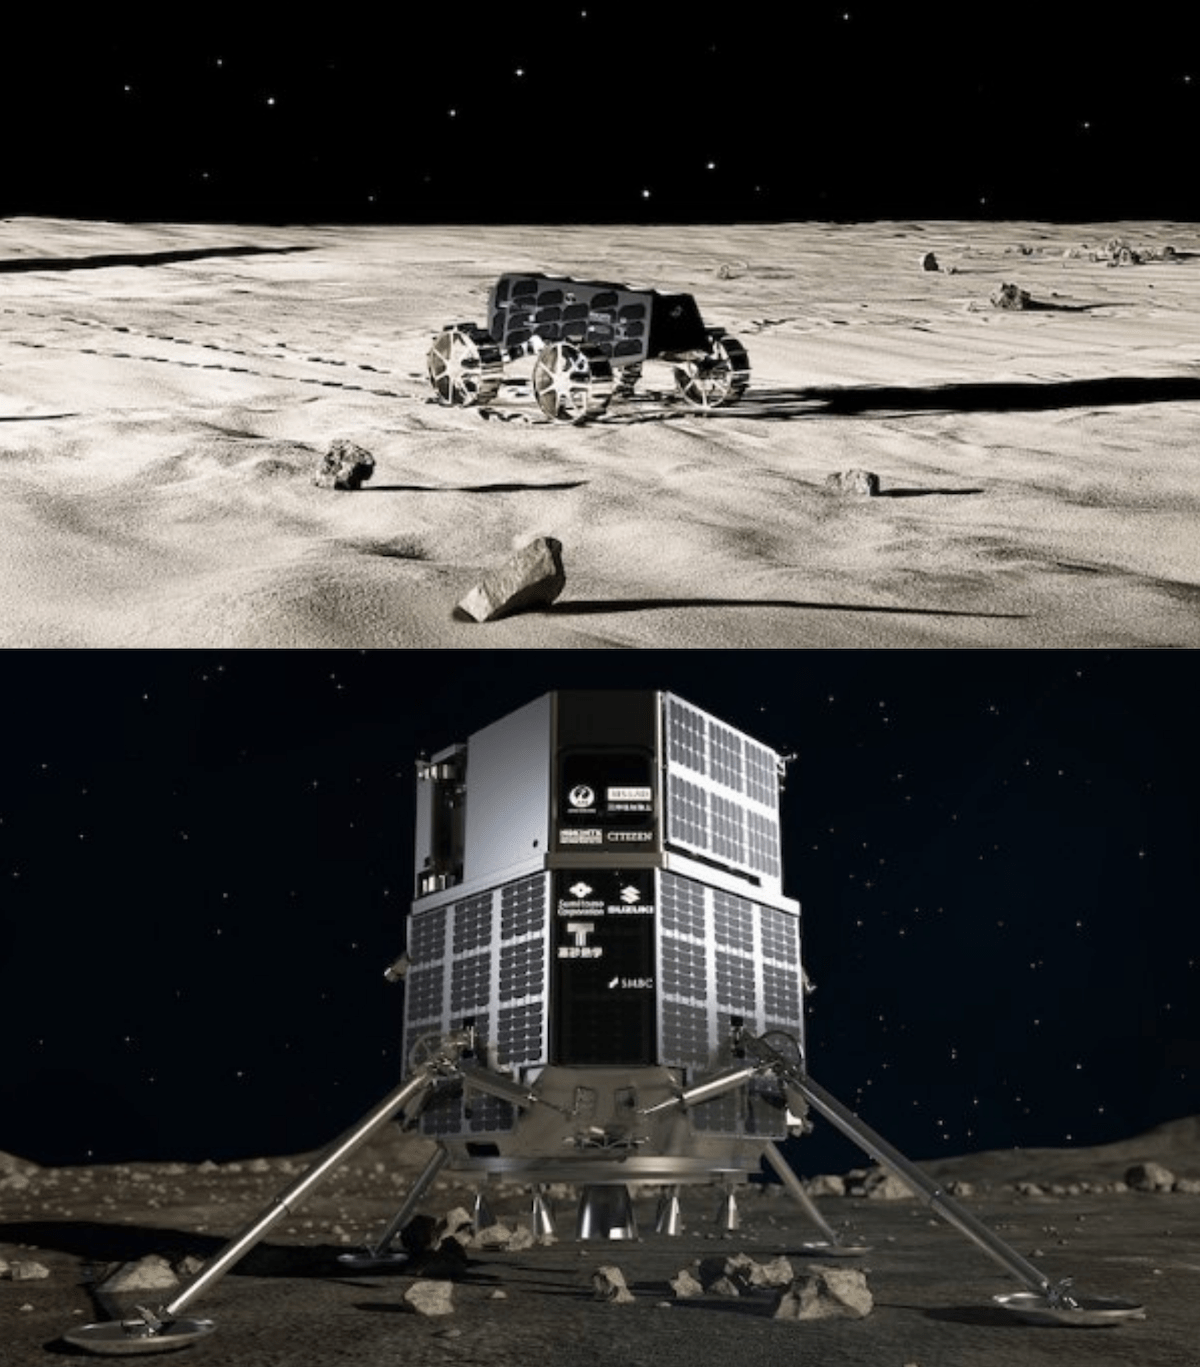 Un render del rover e del lander a cui sta lavorando ispace. Credits: ispace